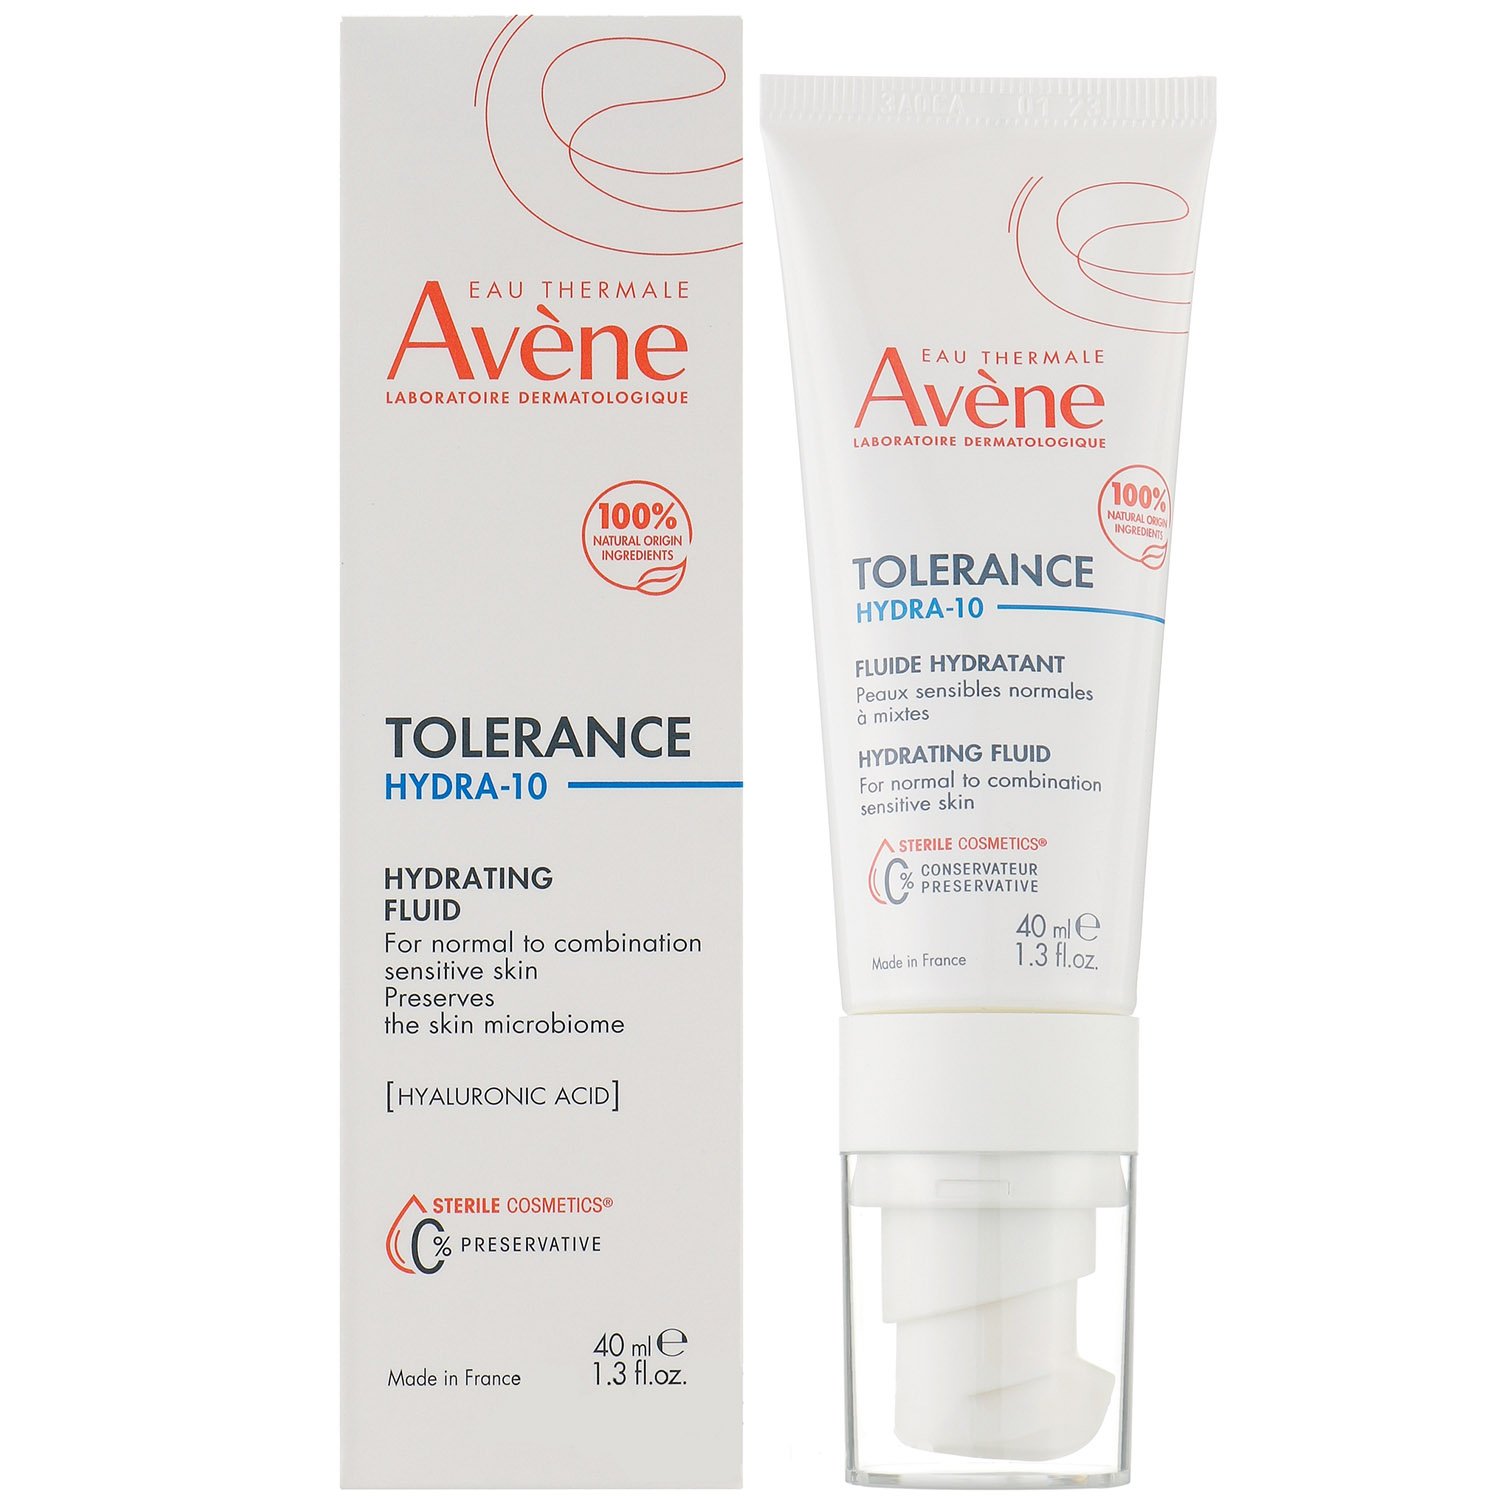 Увлажняющий крем для лица Avene Tolerance Hydra-10, для сухой и нормальной кожи, 40 мл - фото 1